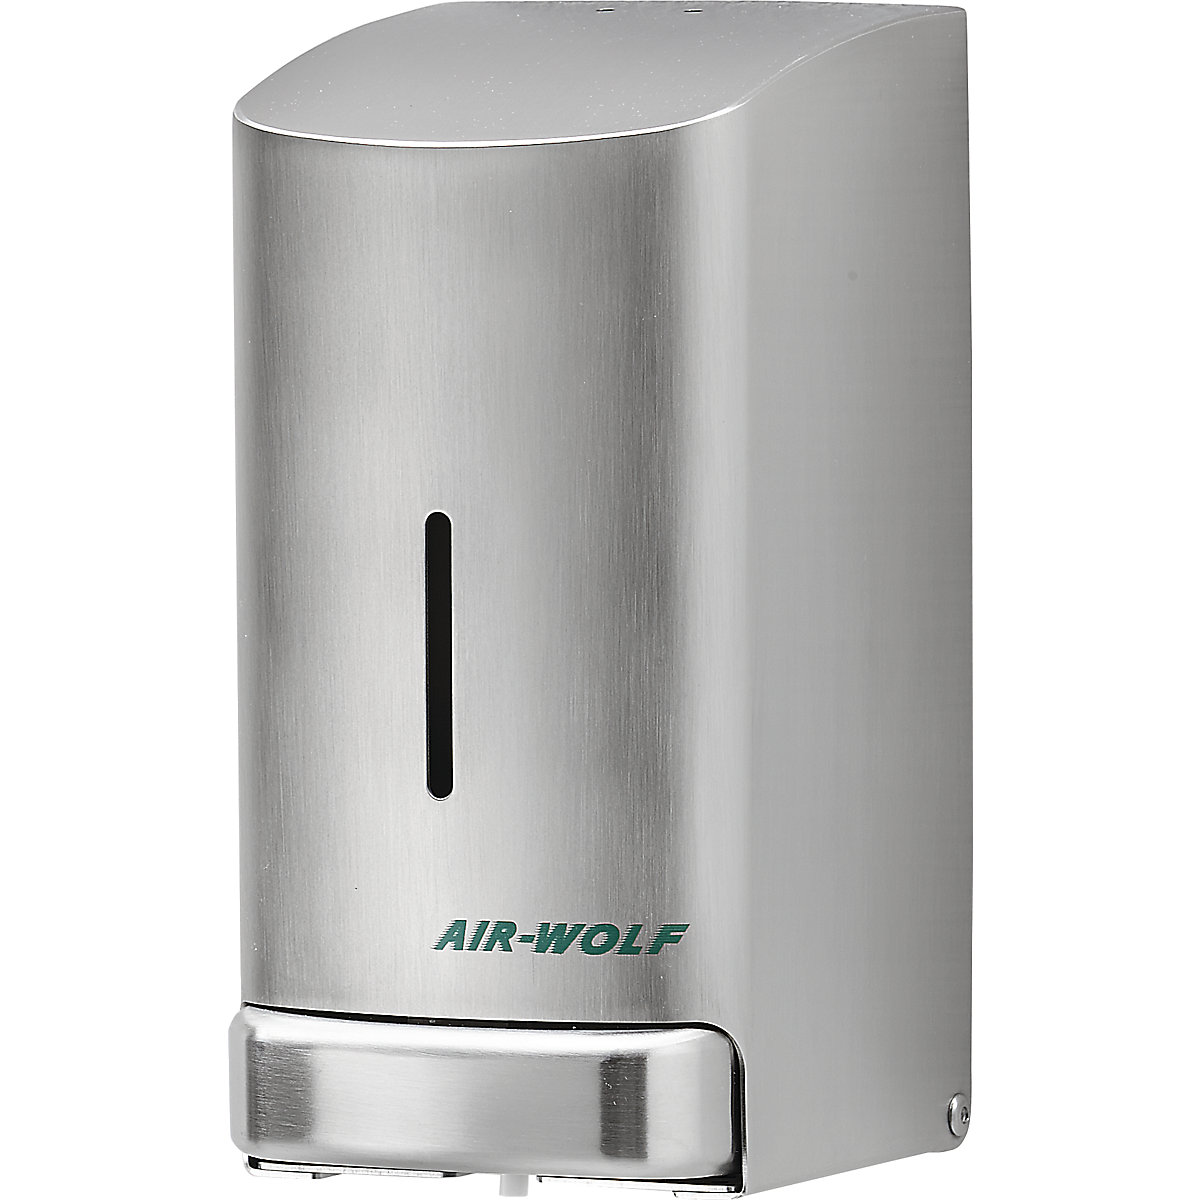 Dispensador de jabón de acero inoxidable – AIR-WOLF, capacidad 0,8 l, acero inoxidable, cepillado-1